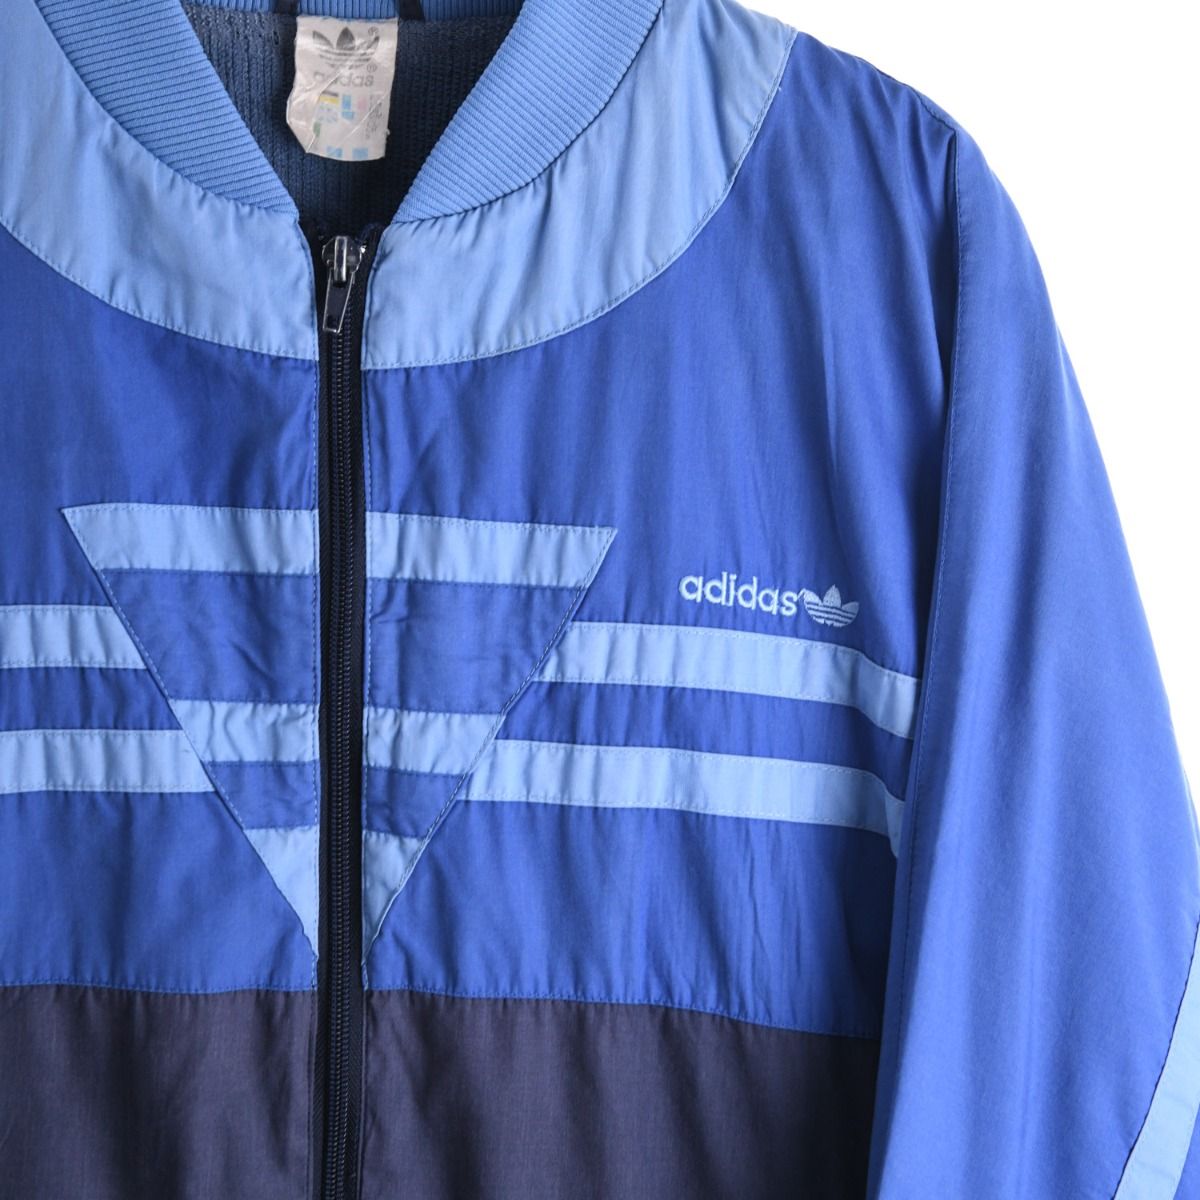 Adidas 1980s Blue Jacket